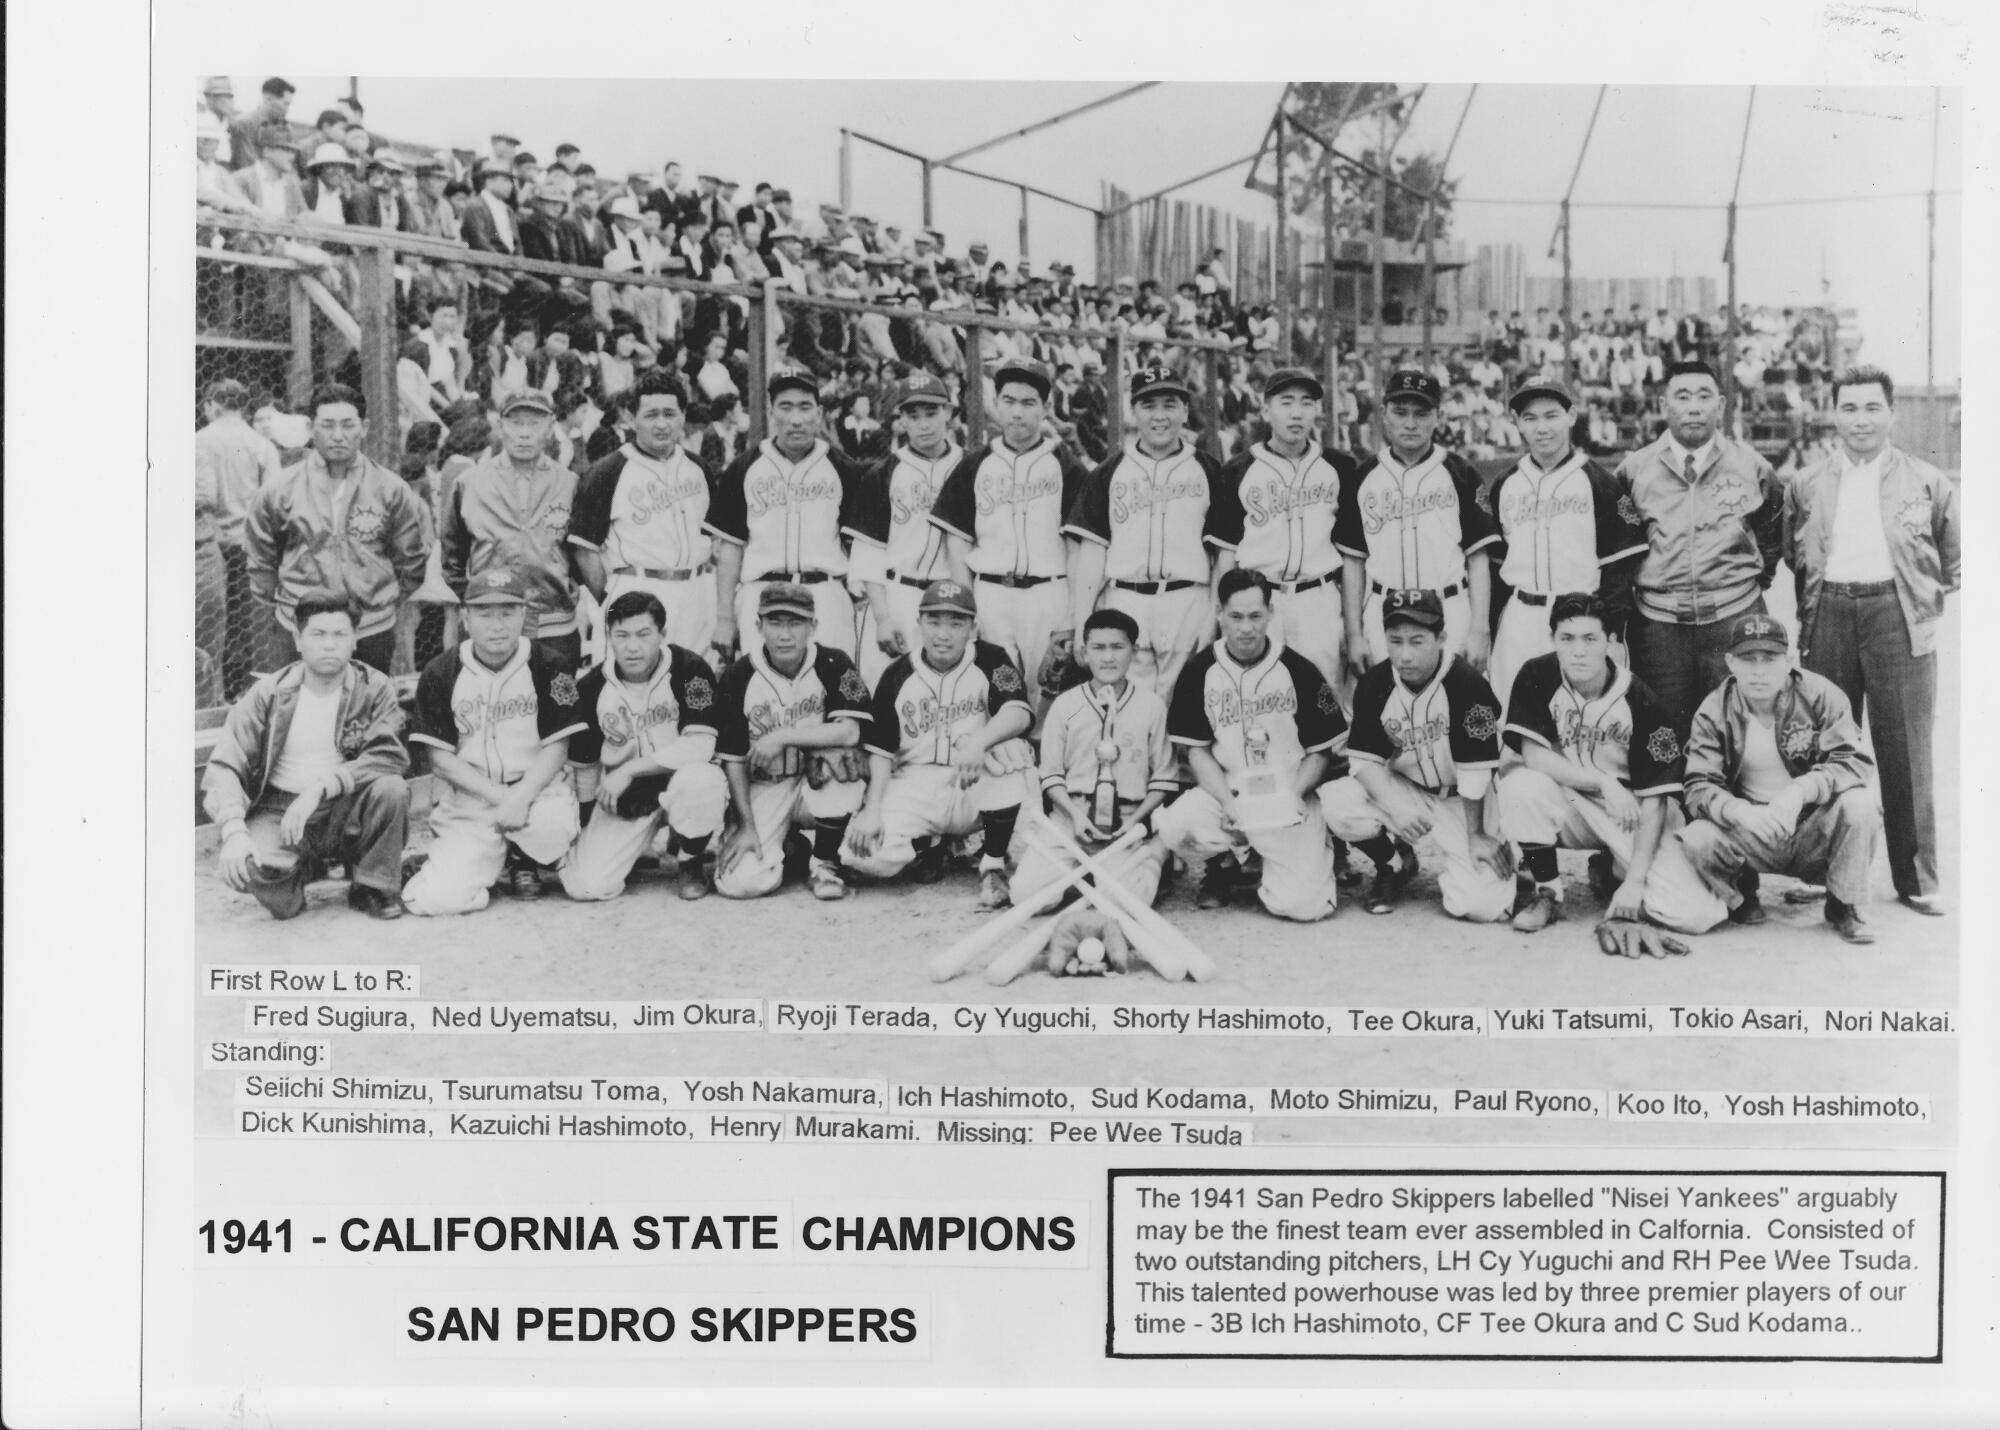 Die Baseballspieler der San Pedro Skippers stellen sich für ein Porträt des Teams auf, das aus japanischen Amerikanern der zweiten Generation besteht